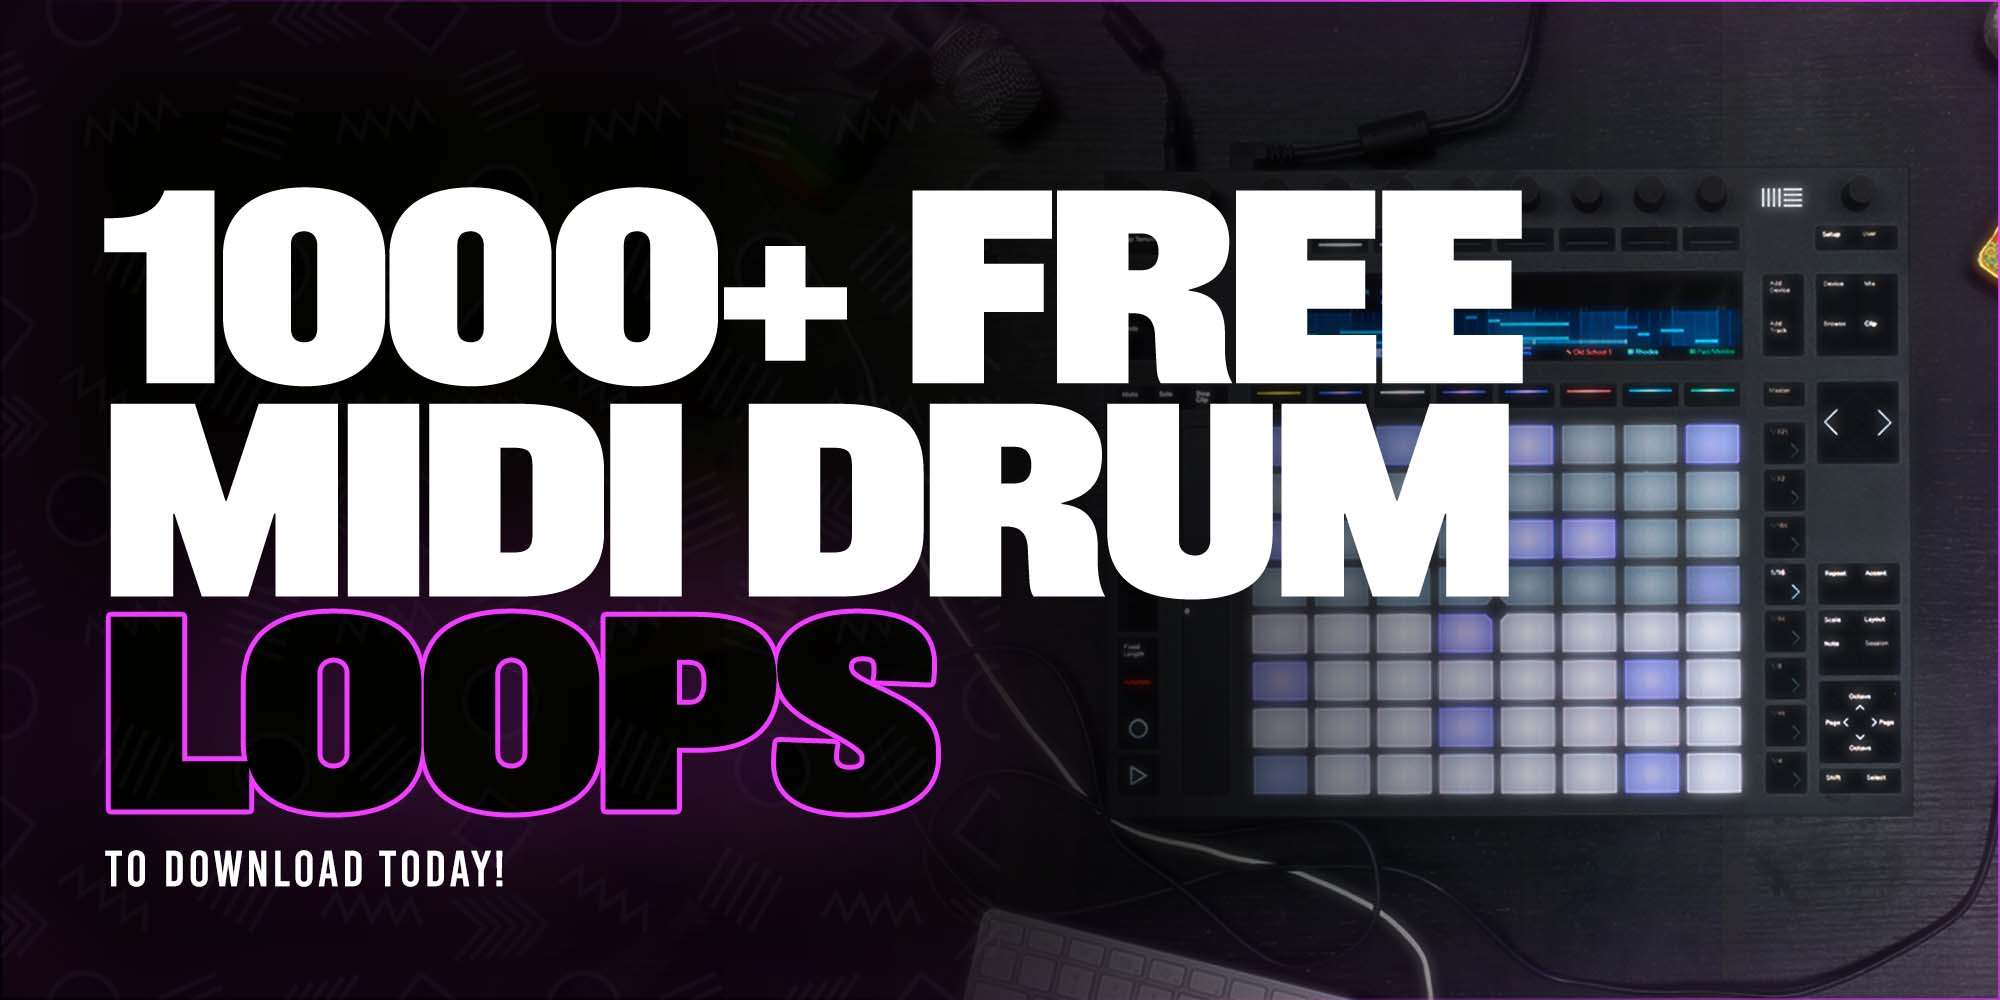 trip hop drum loops free